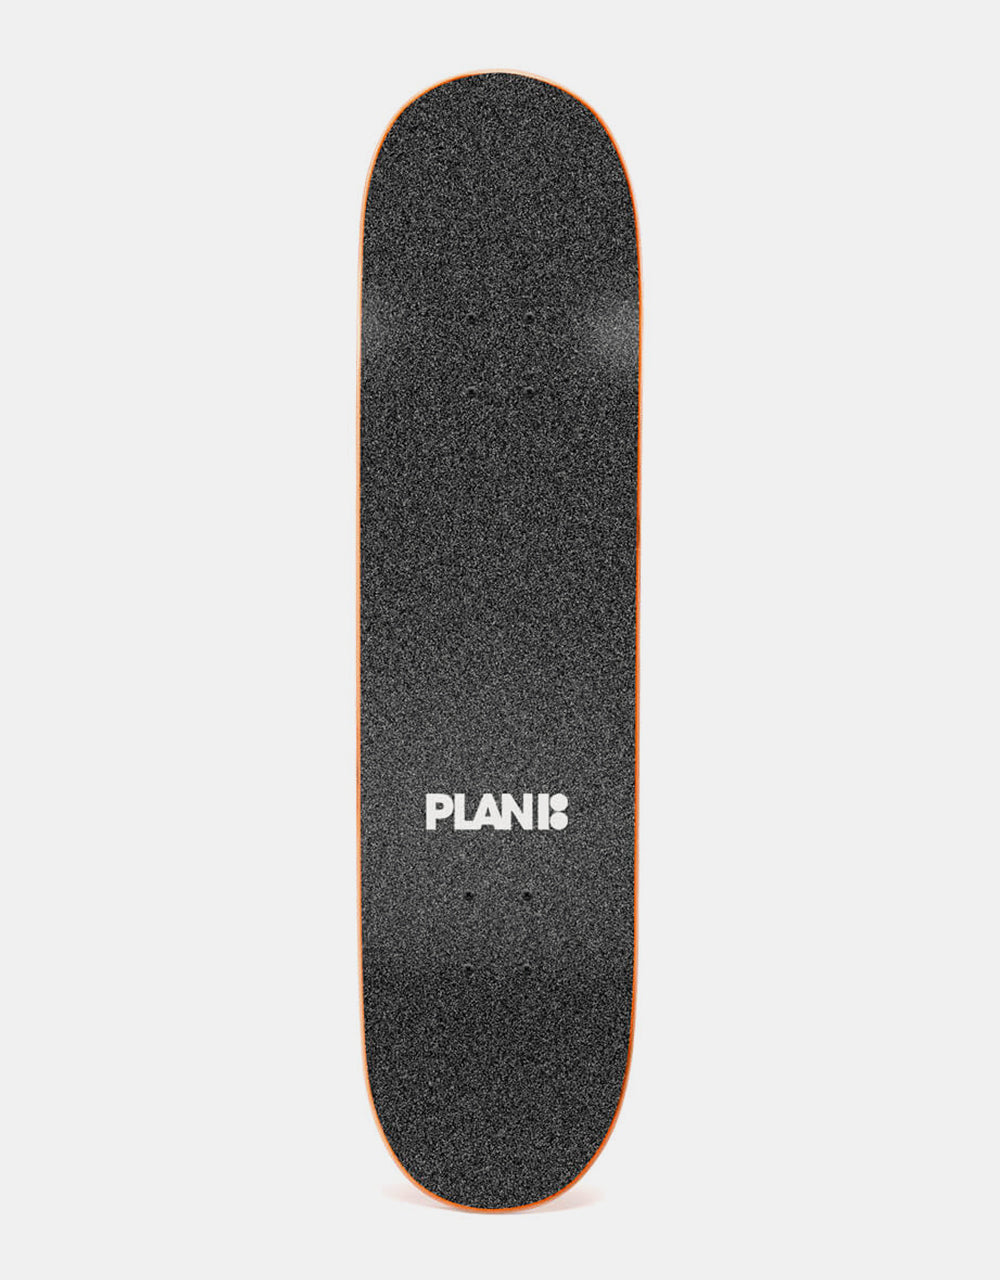 Plan B Weird Science Complete Skateboard - 8.125"